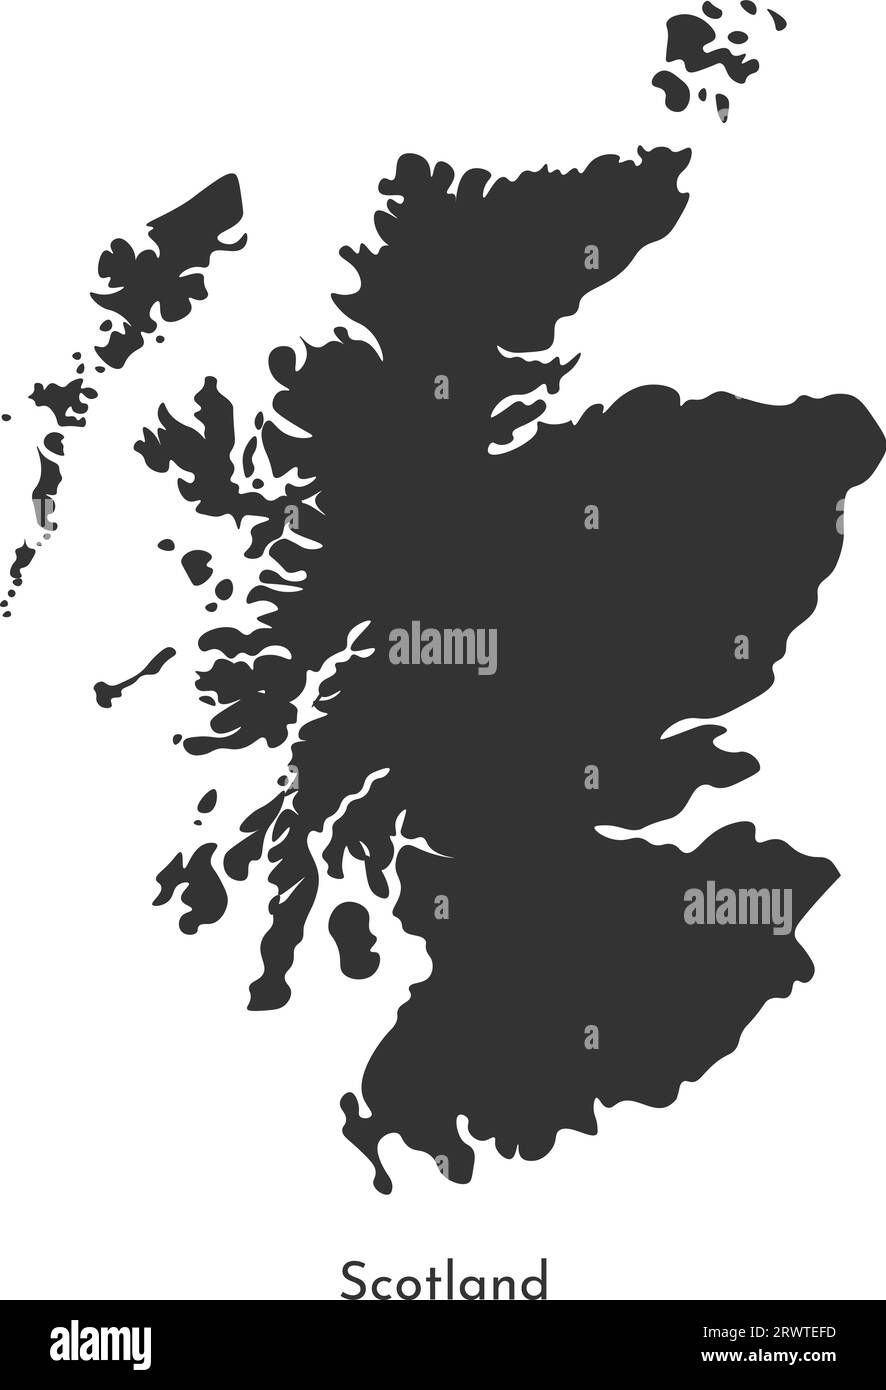 Mappa di illustrazione semplificata con isolamento vettoriale. Sagoma grigia della Scozia (Regno Unito di Gran Bretagna e Irlanda del Nord). Sfondo bianco Illustrazione Vettoriale